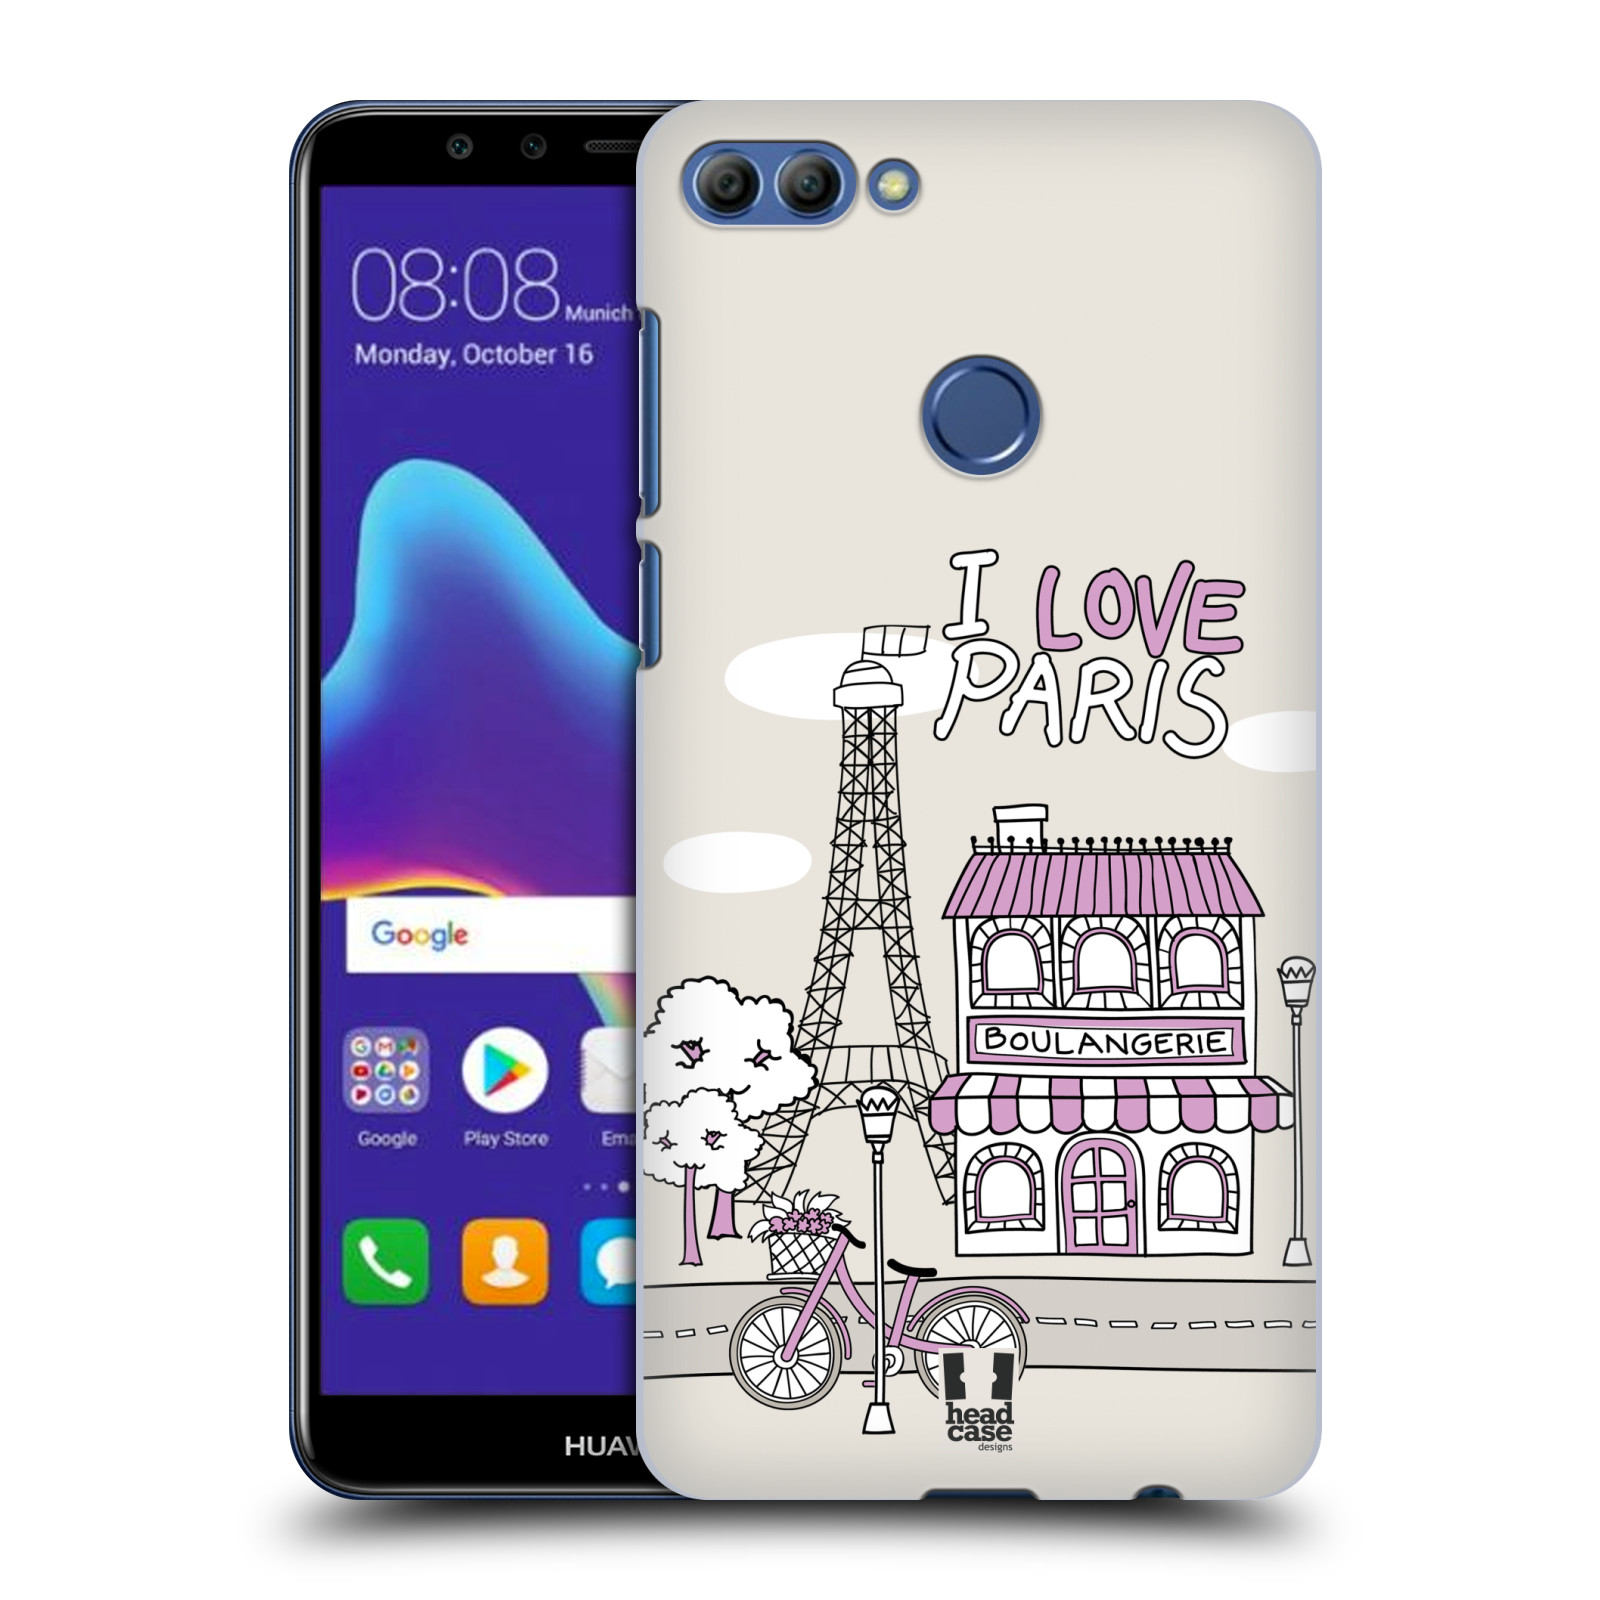 HEAD CASE plastový obal na mobil Huawei Y9 2018 vzor Kreslená městečka FIALOVÁ, Paříž, Francie, I LOVE PARIS